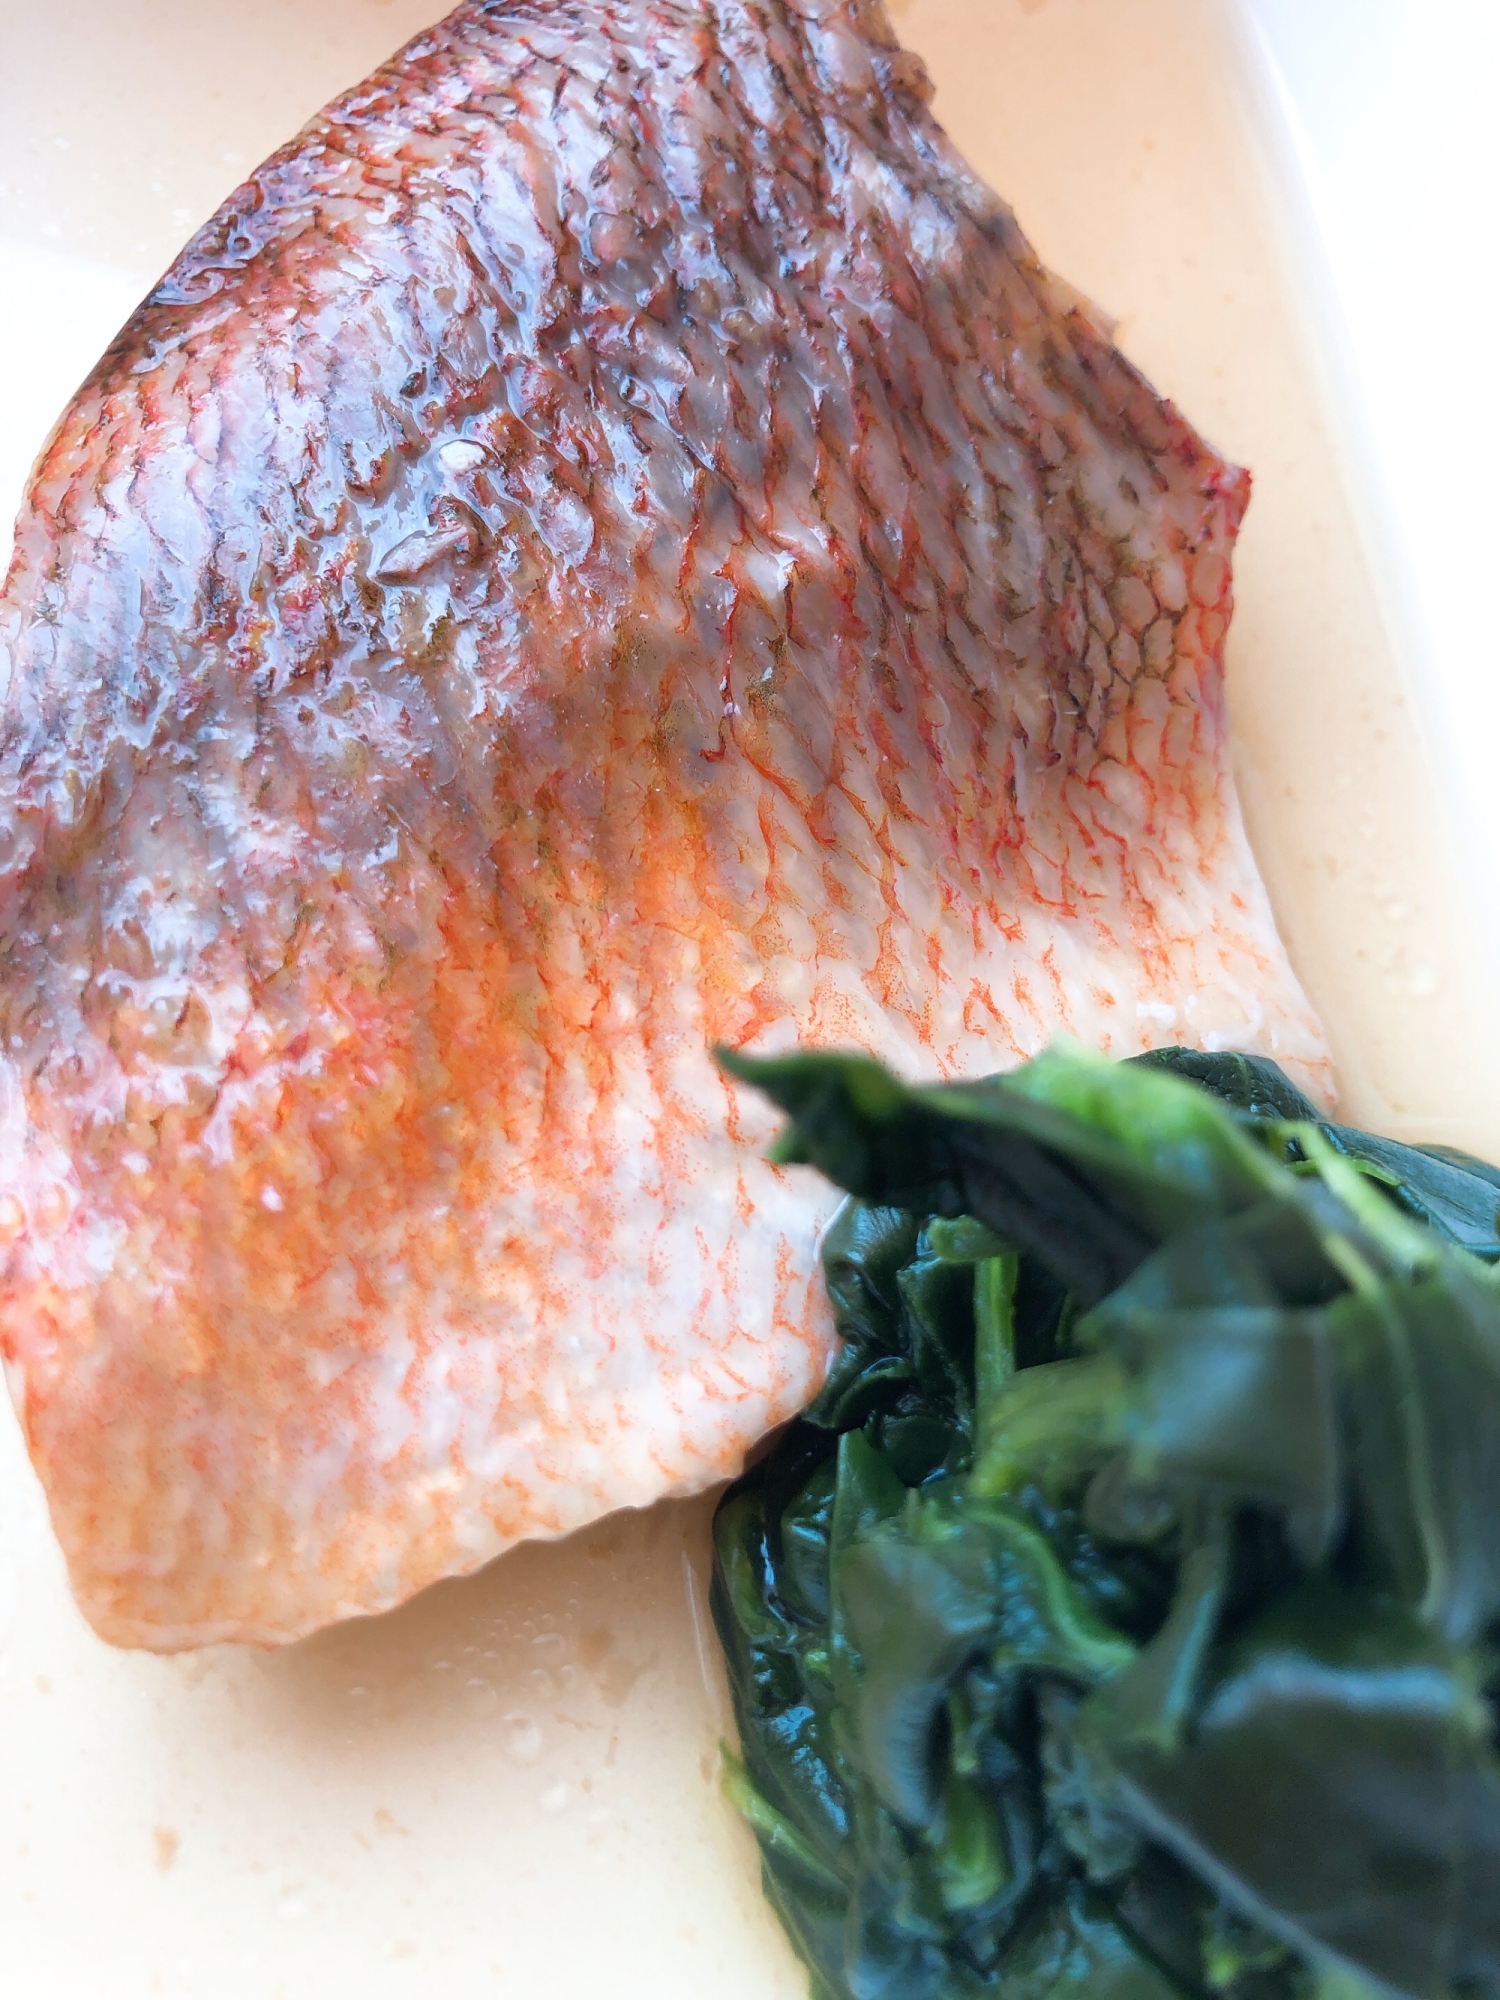 めんつゆで簡単につくろう♬赤魚の煮付け